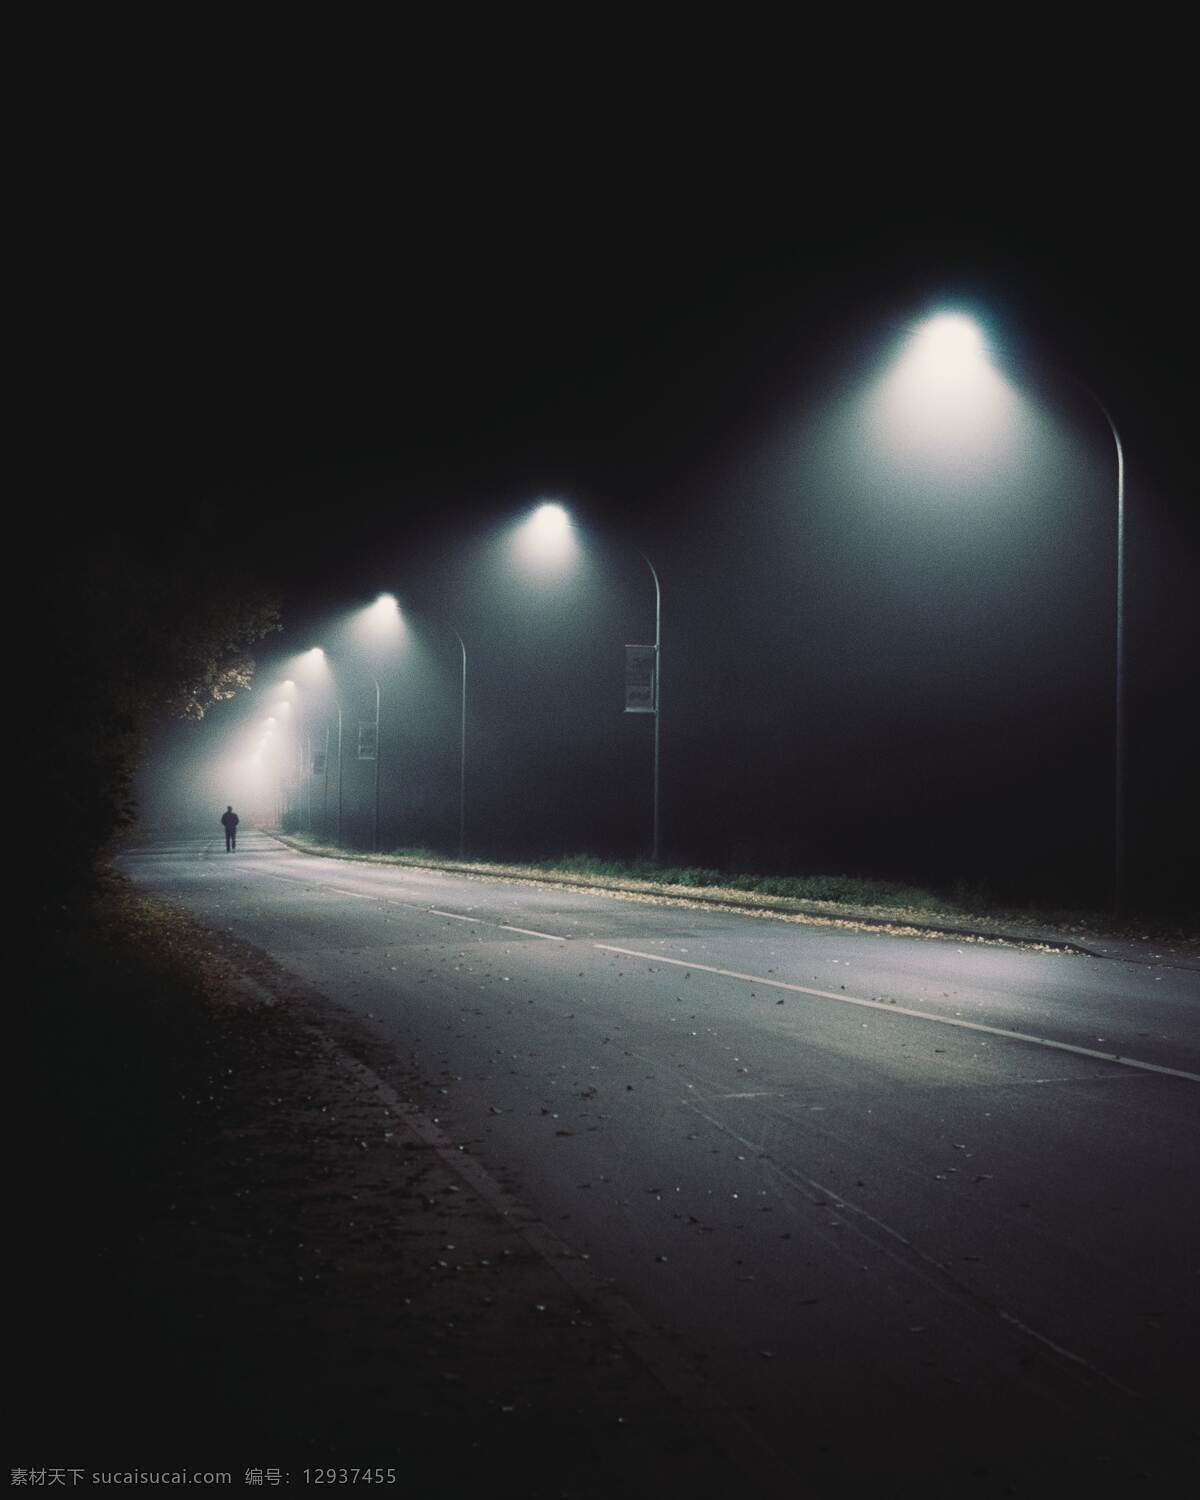 道路 夜晚 路灯 黑白 背景 背景素材